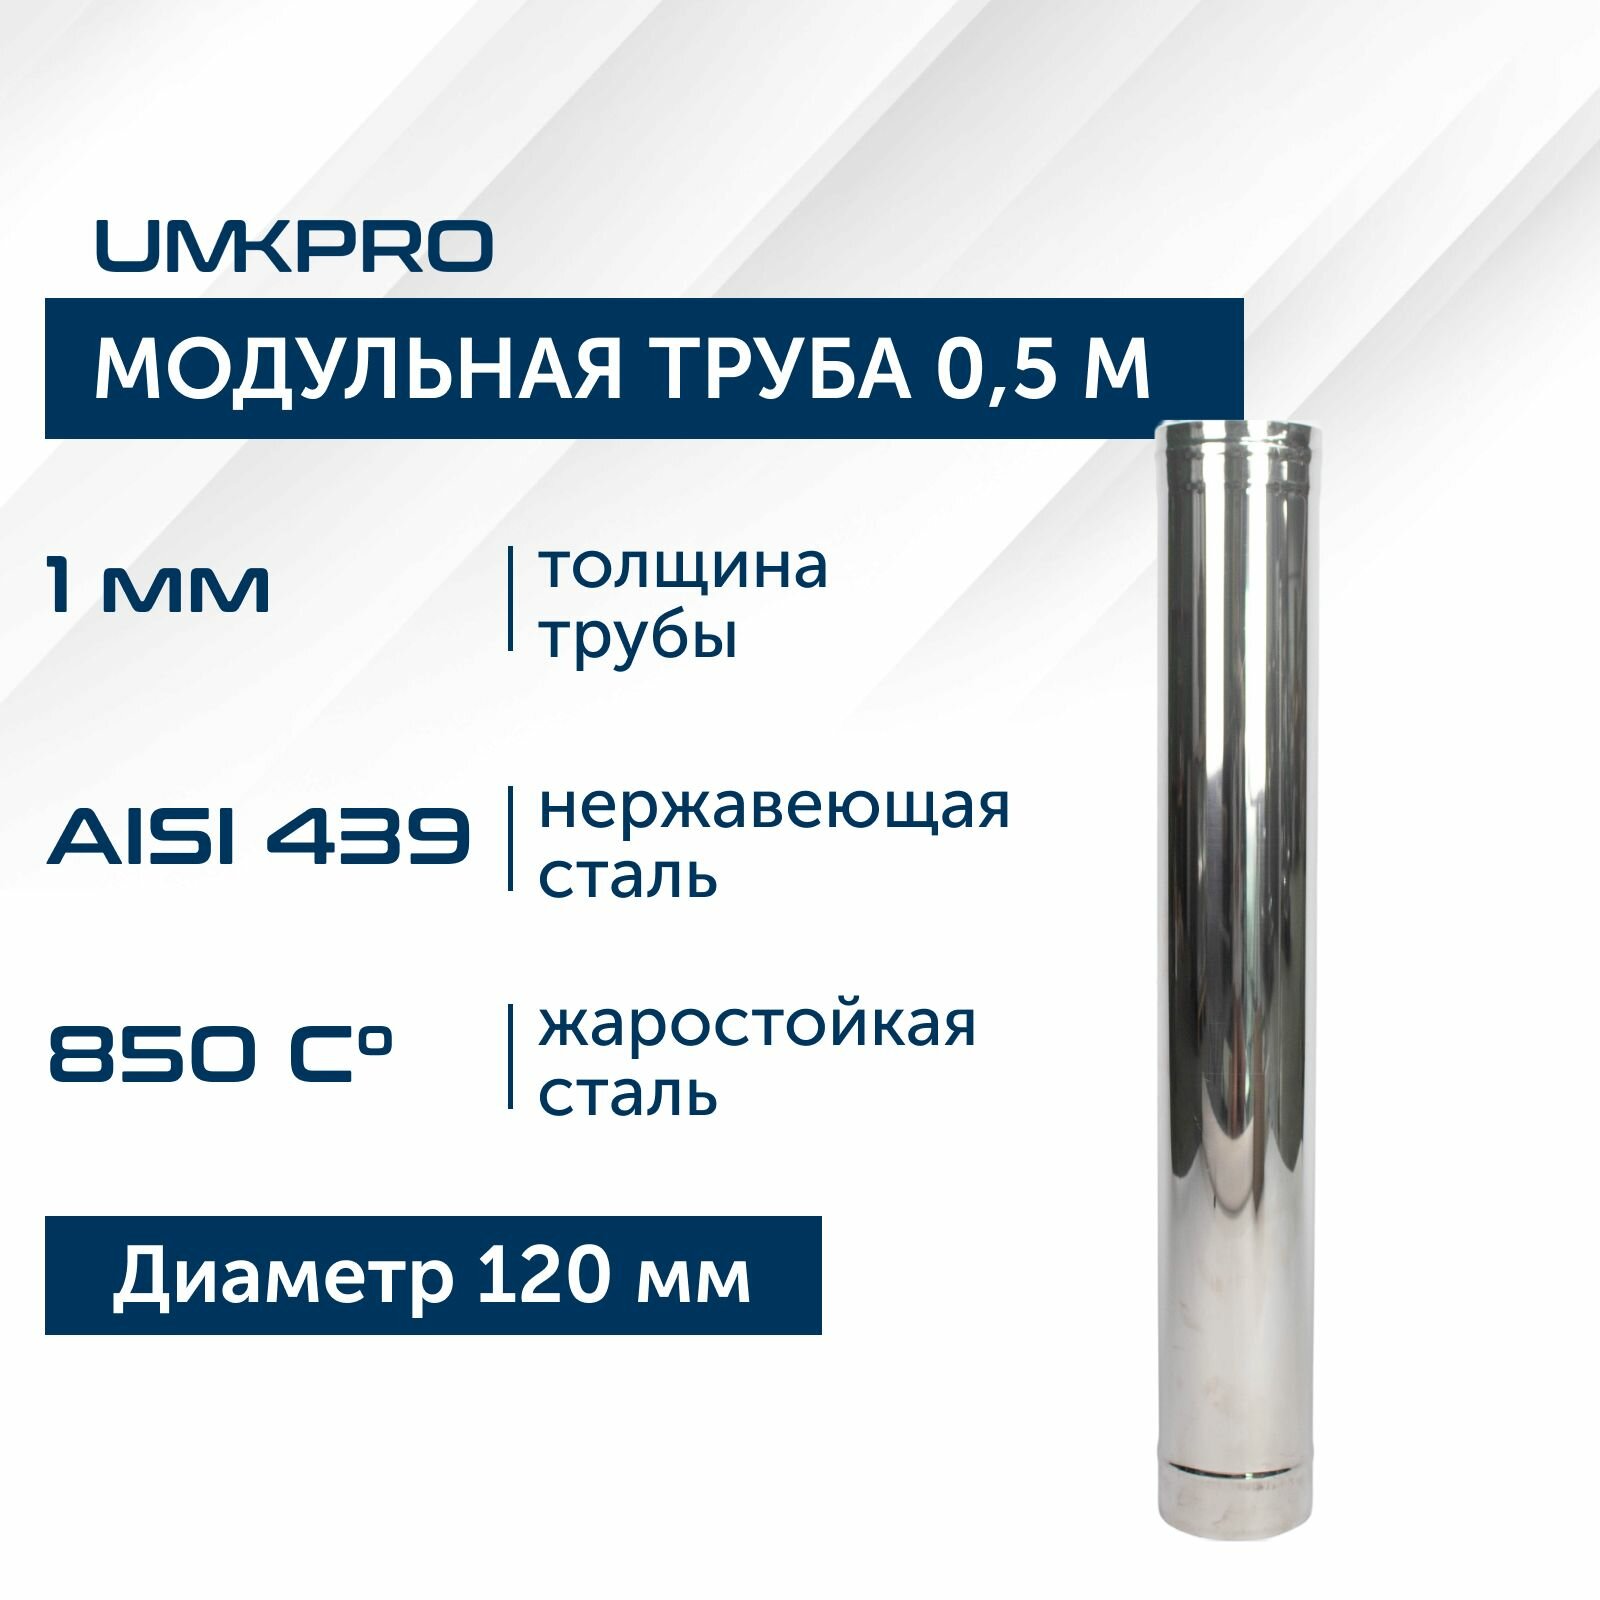 Труба модульная для дымохода 0,5 м UMKPRO D 120, AISI 439/1,0мм